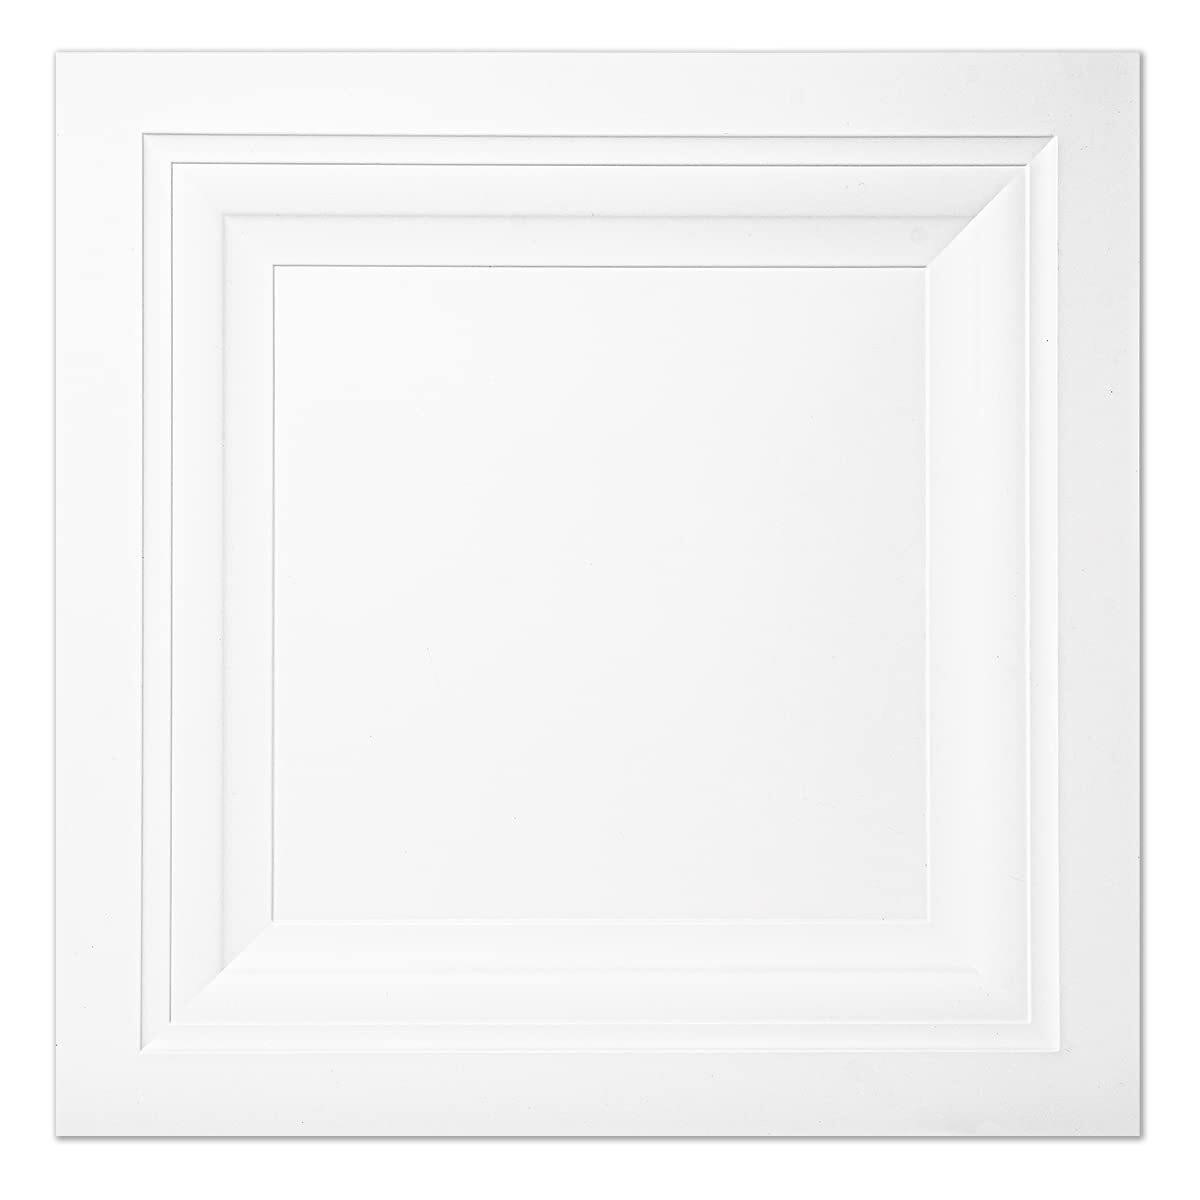 $80  Art3d 12pk 2x2ft White Square Ceiling Tile